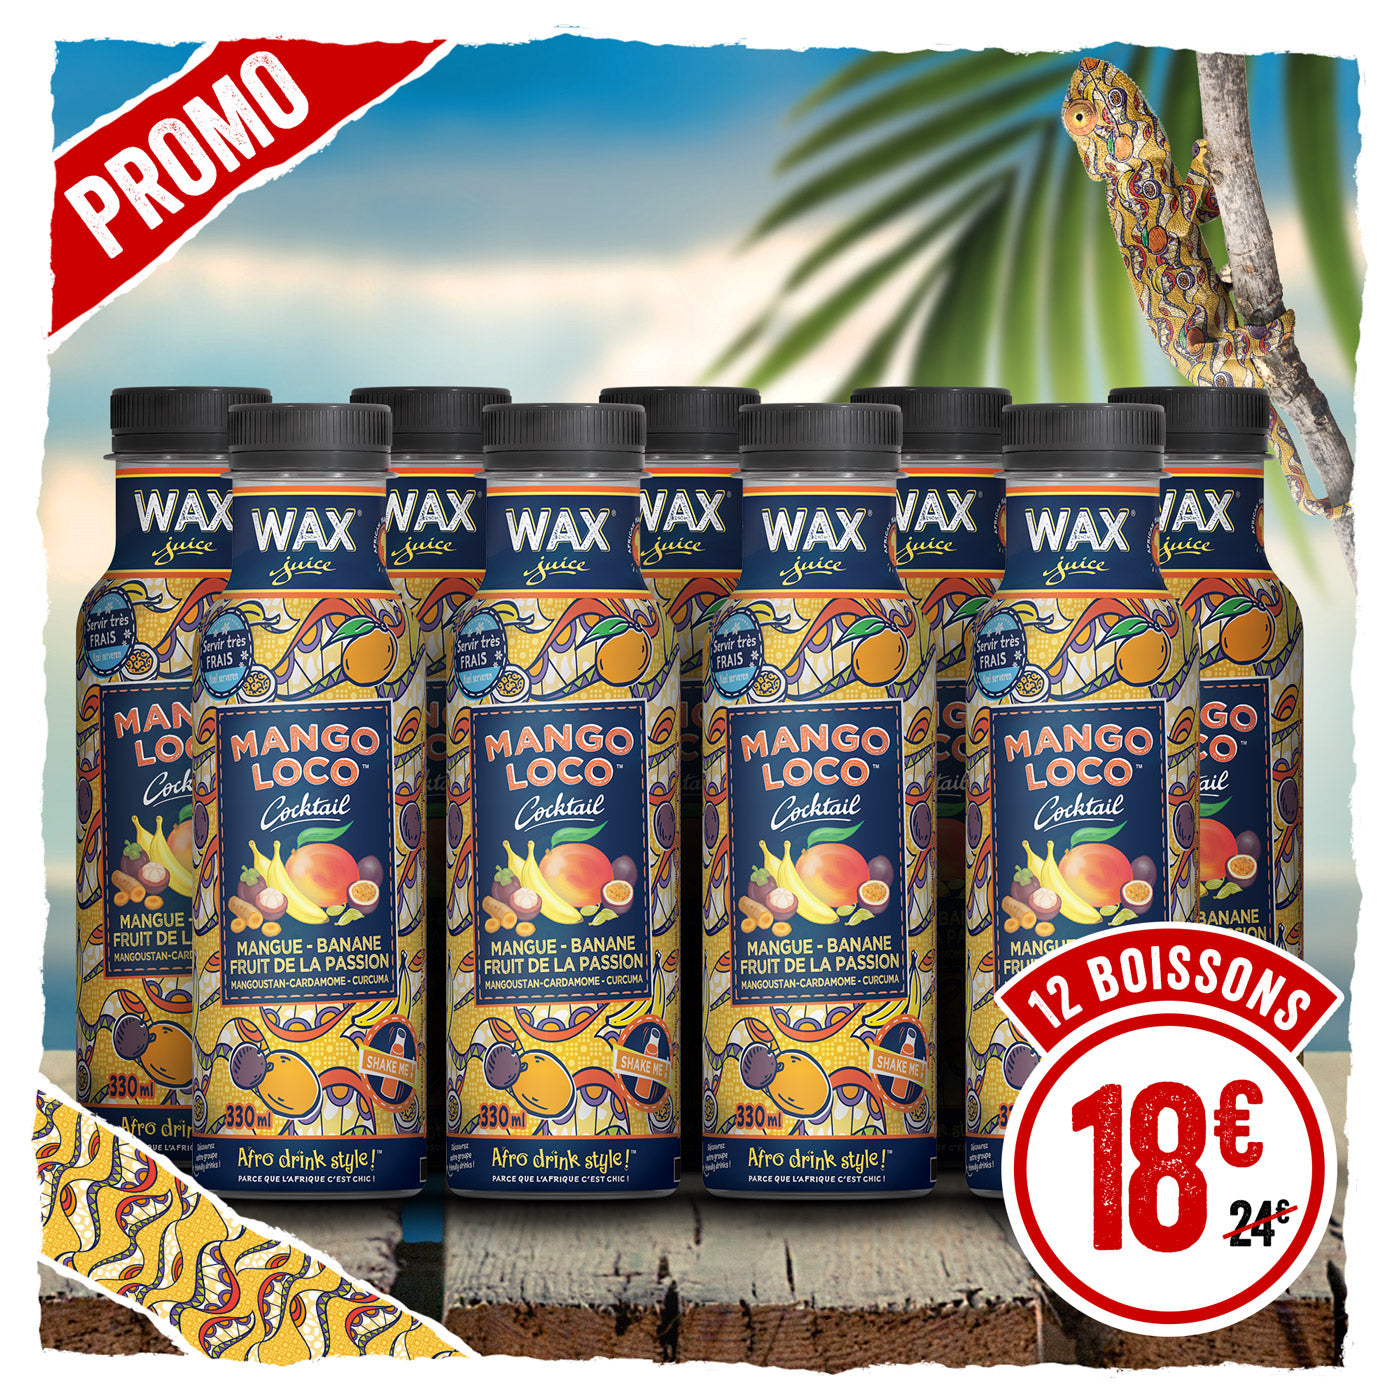 Colis de 12 <br> Wax Mango Loco